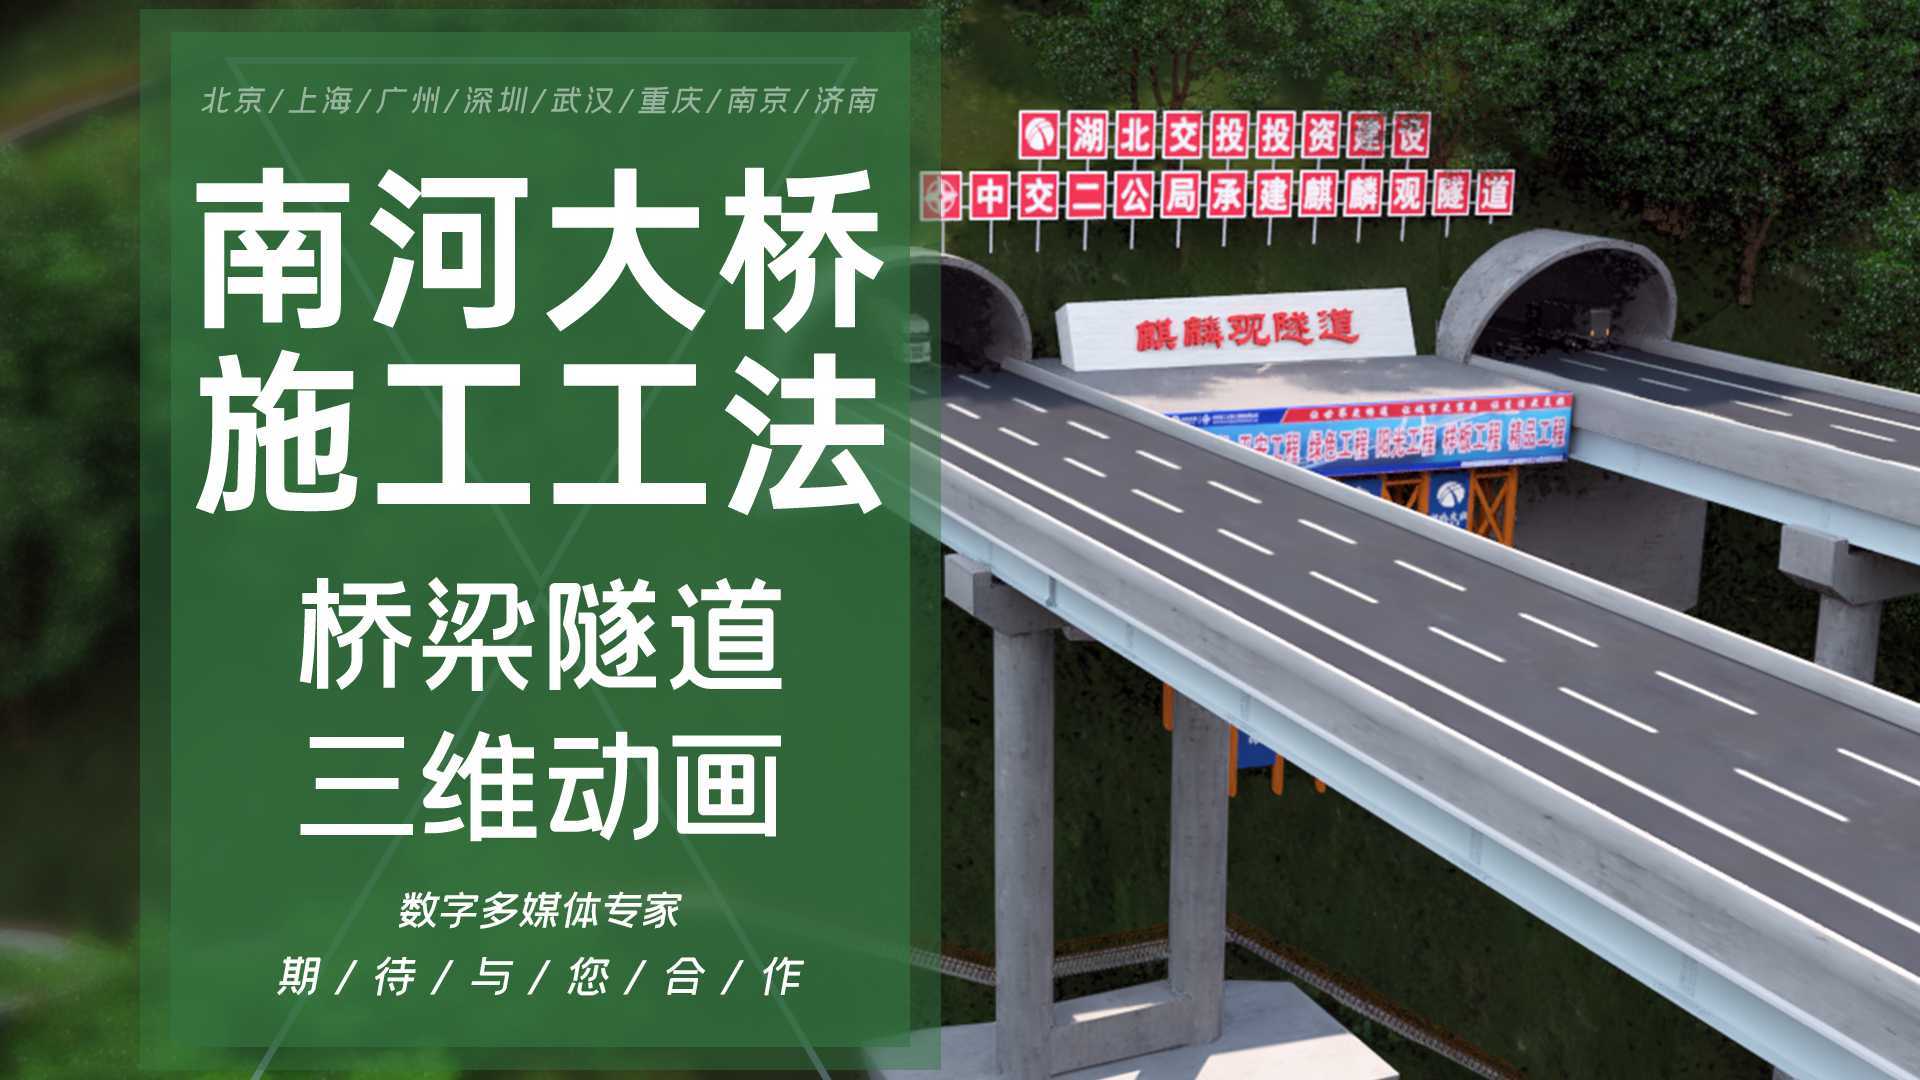 南河特大桥施工动画北京上海广州深圳动画制作桥梁隧道施工法工艺工程3d三维动画制作